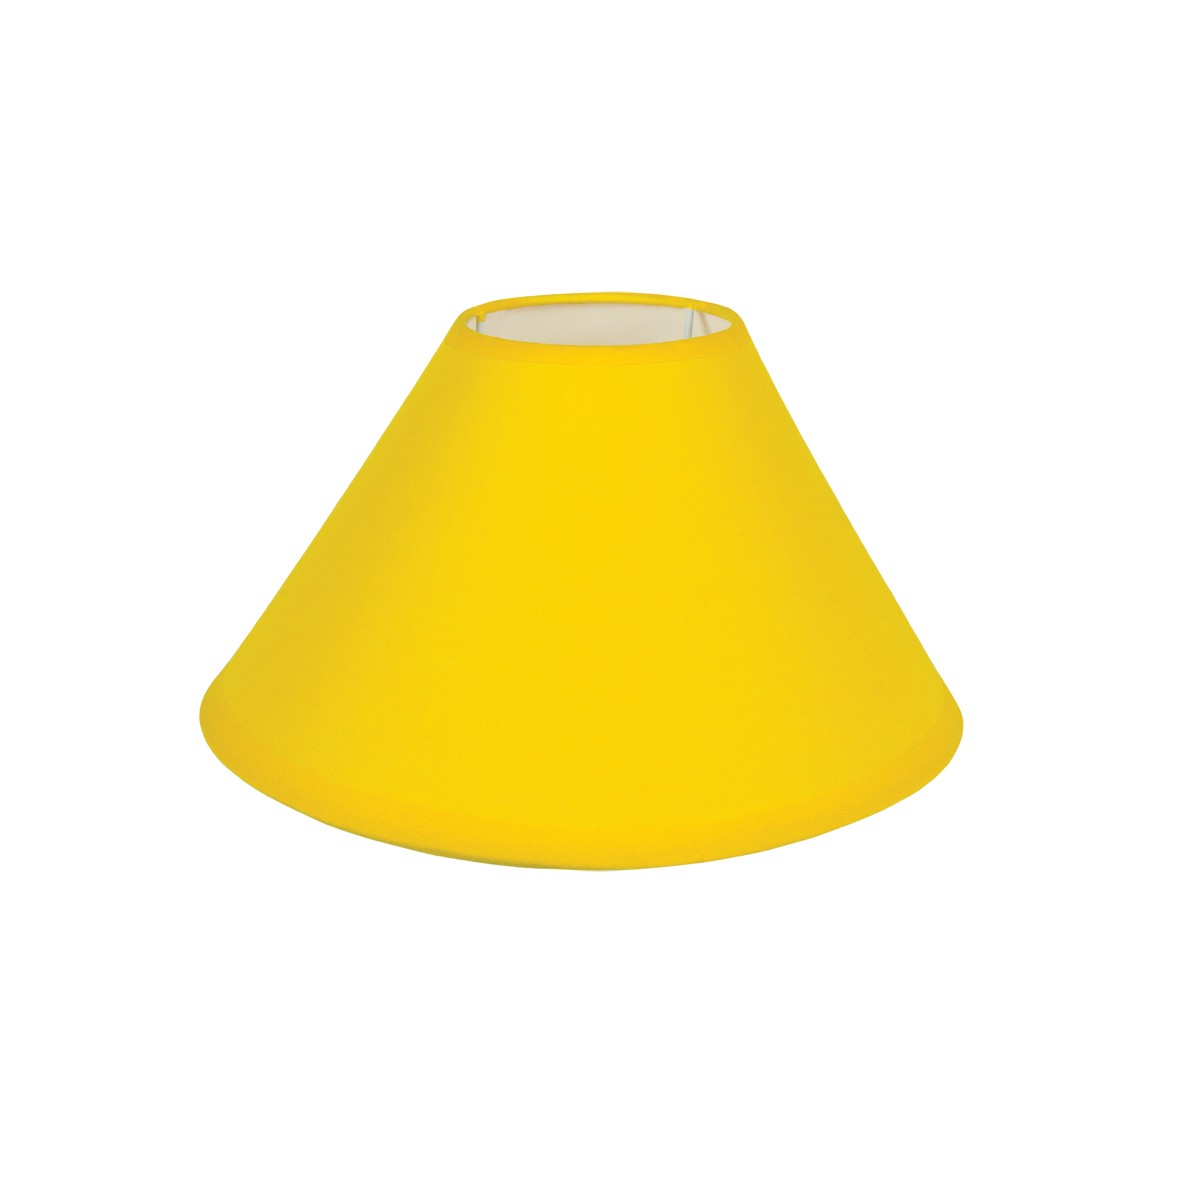 Καπέλο Μονόχρωμο Στρογγυλό Φ35cm Κάτω Πλευρά- Σε Κίτρινο Χρώμα        VK/E27/E14/D35/Y